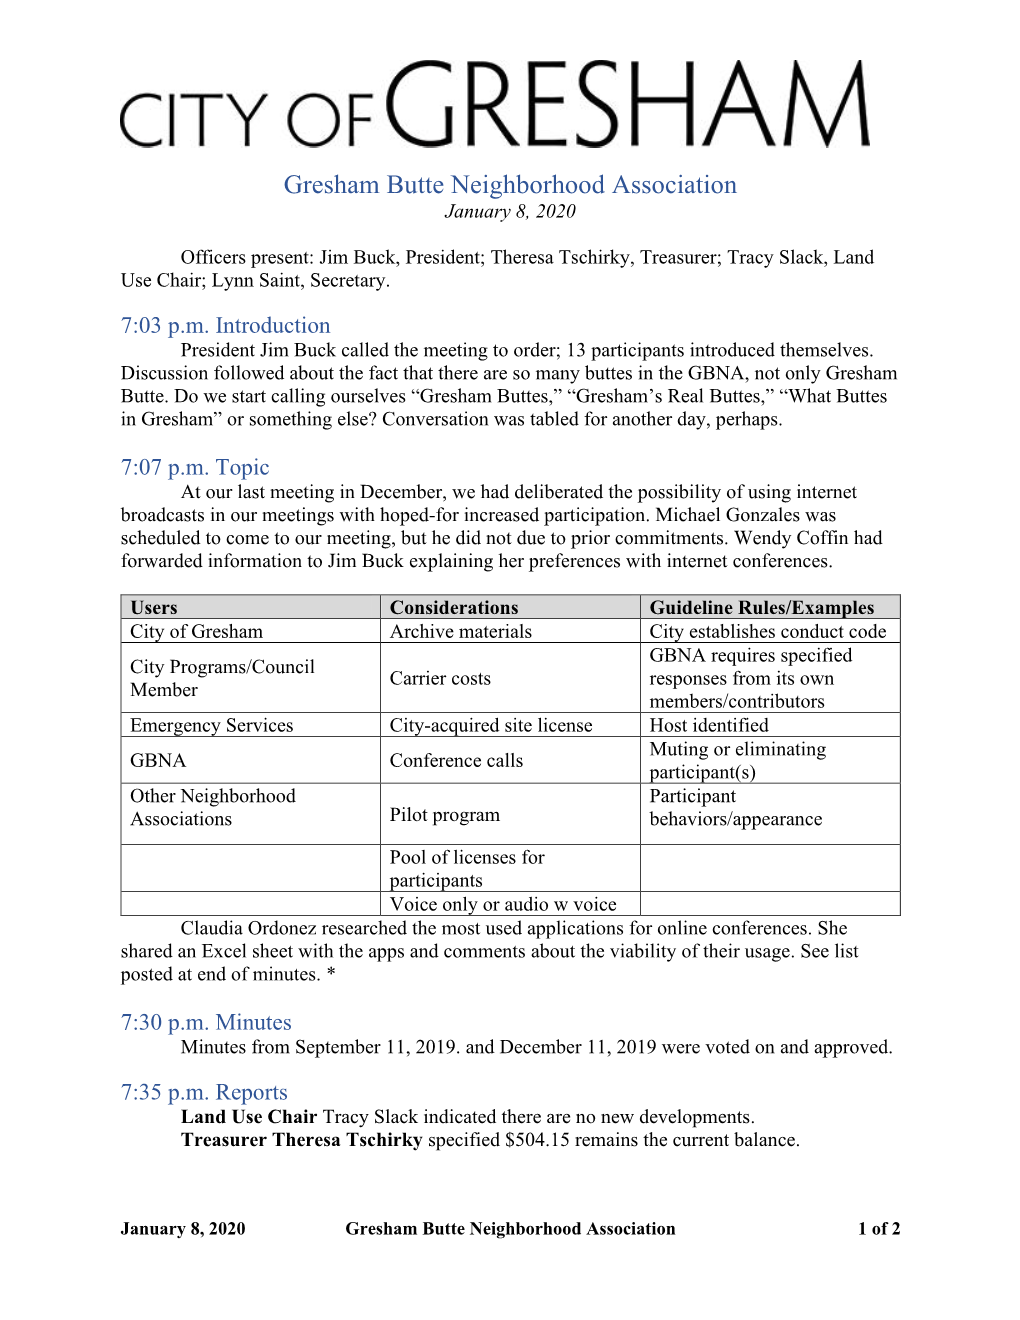 2020-01-08 Gresham Butte Neighborhood Association Minutes